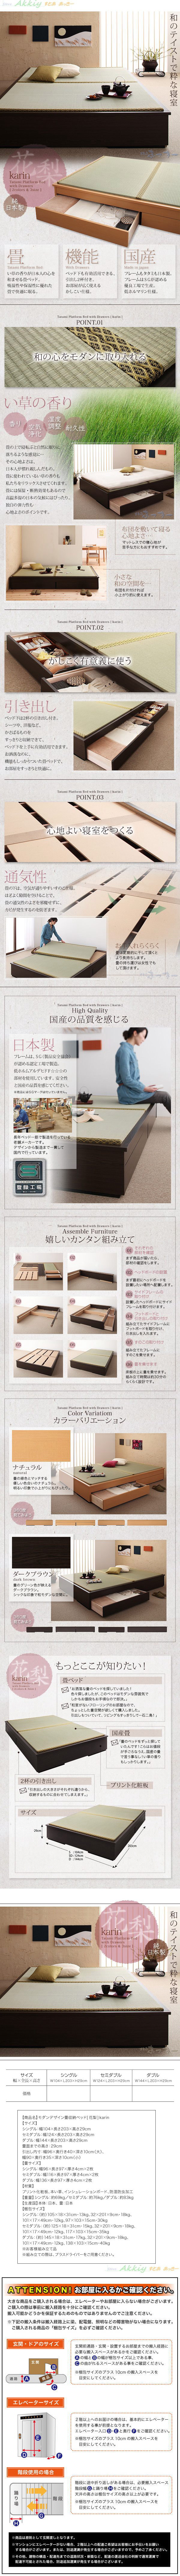 流行■Karin セミダブル/ブラウン モダンデザイン畳収納ベッド[花梨] 小粋な和の空間を・・・ セミダブル